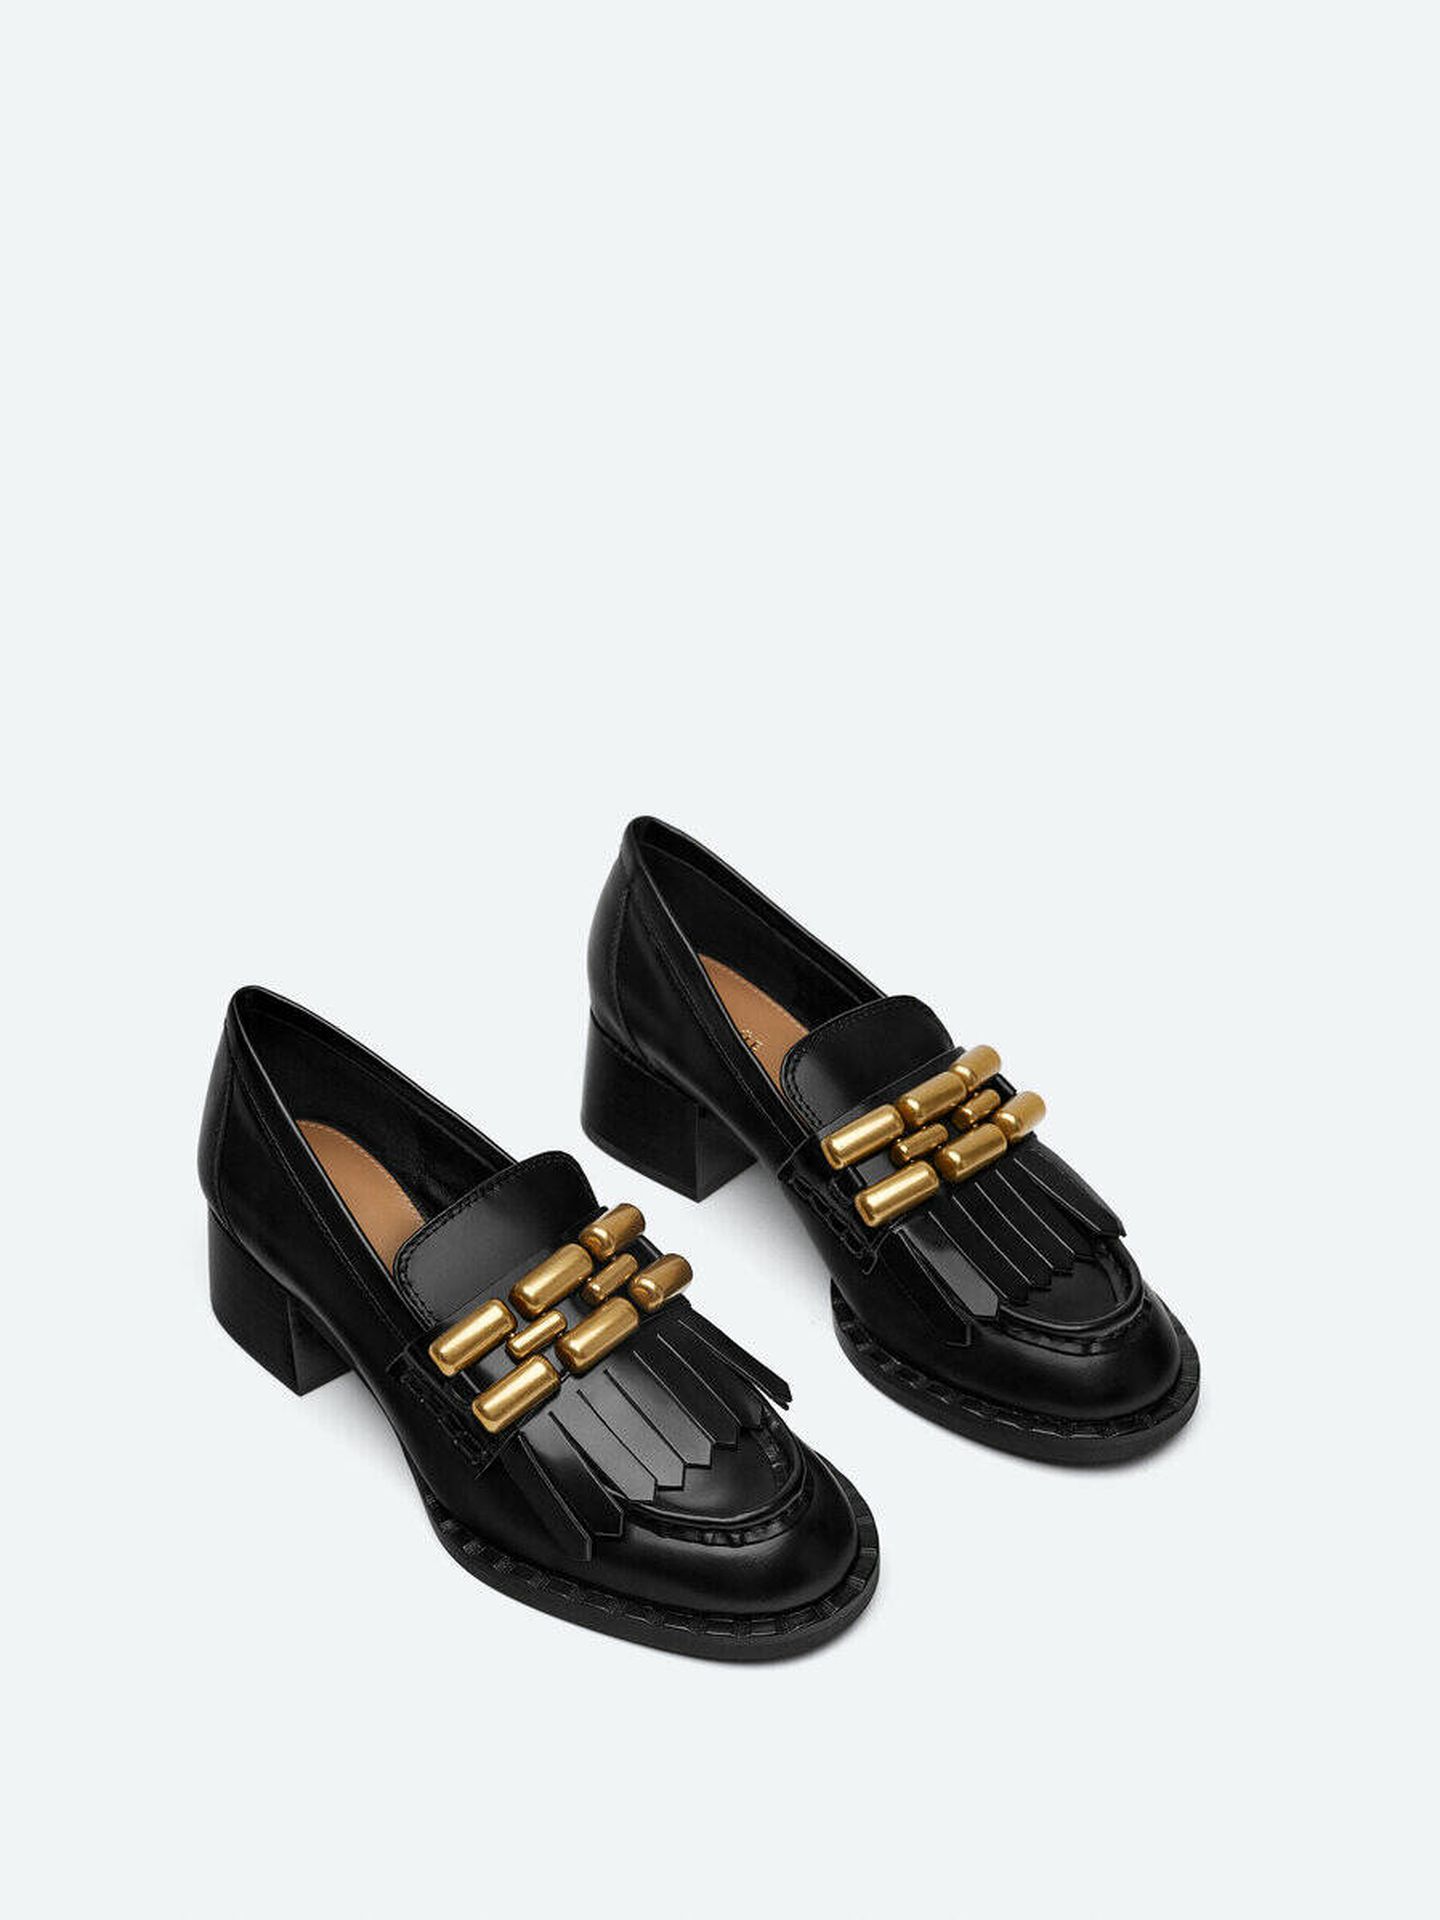 Los zapatos negros de Uterqüe. (Cortesía/Uterqüe)